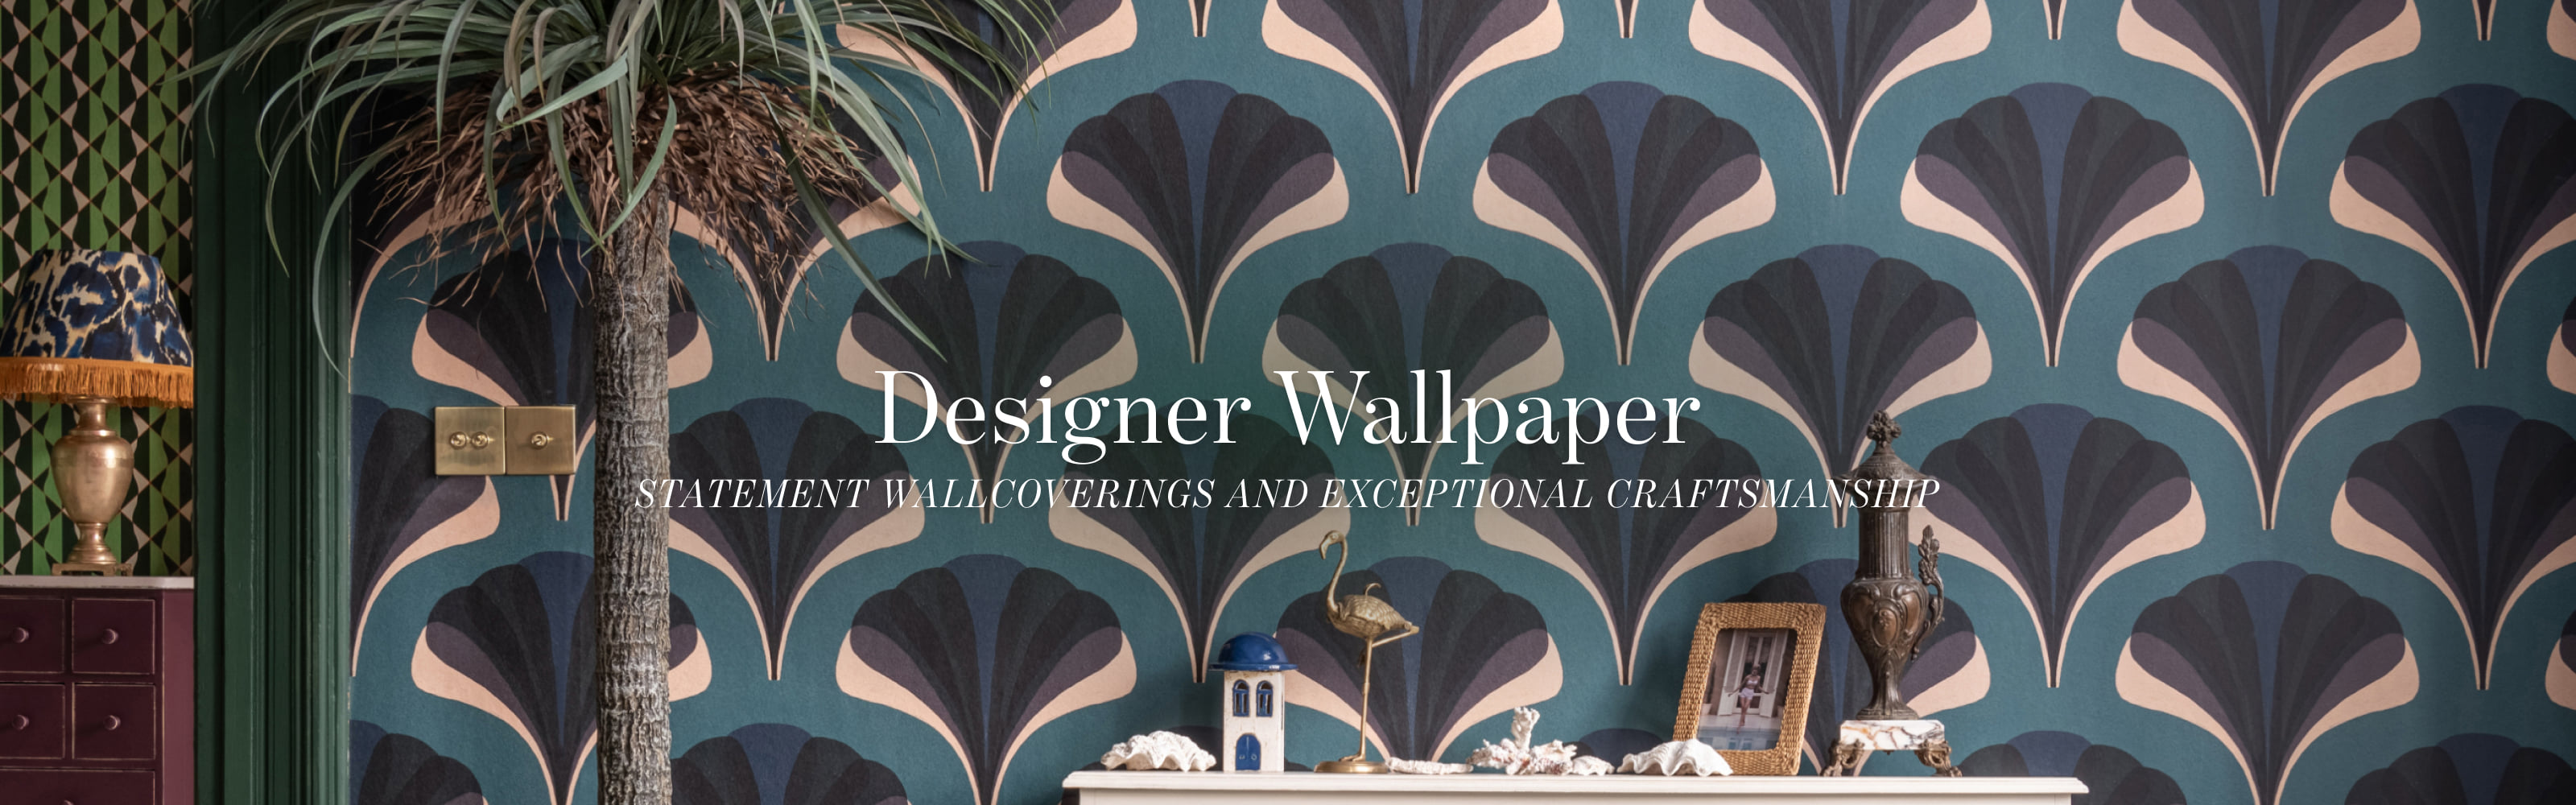 Designer Wallpaper